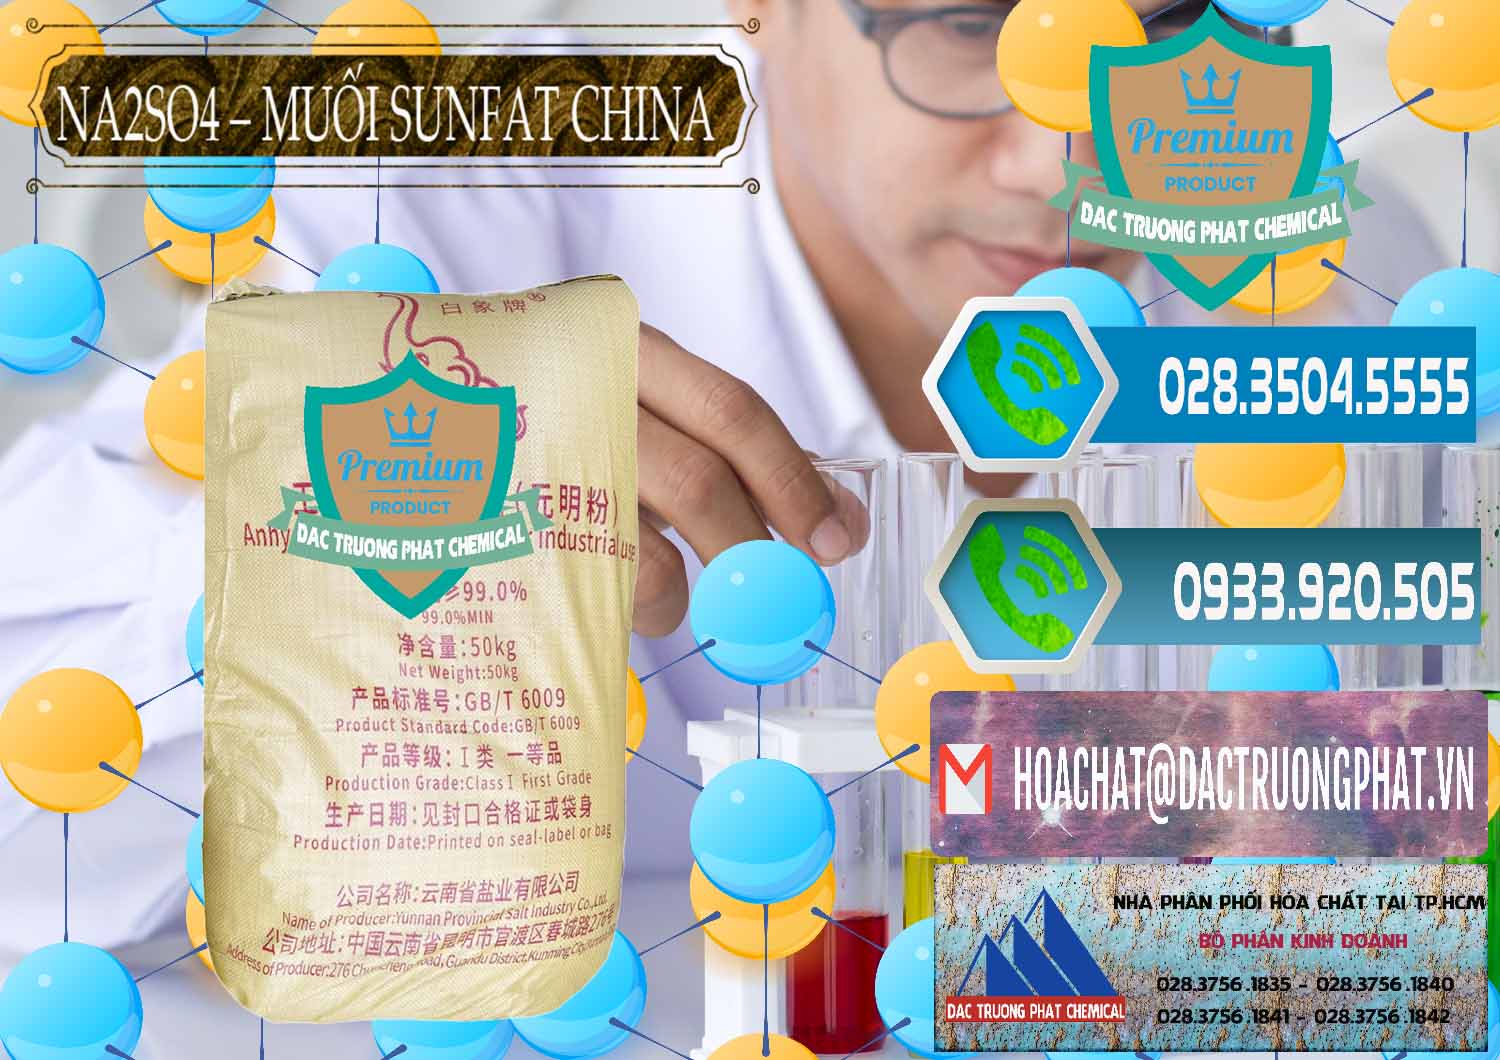 Đơn vị bán _ cung ứng Sodium Sulphate - Muối Sunfat Na2SO4 Logo Con Voi Trung Quốc China - 0409 - Công ty chuyên nhập khẩu và cung cấp hóa chất tại TP.HCM - congtyhoachat.net